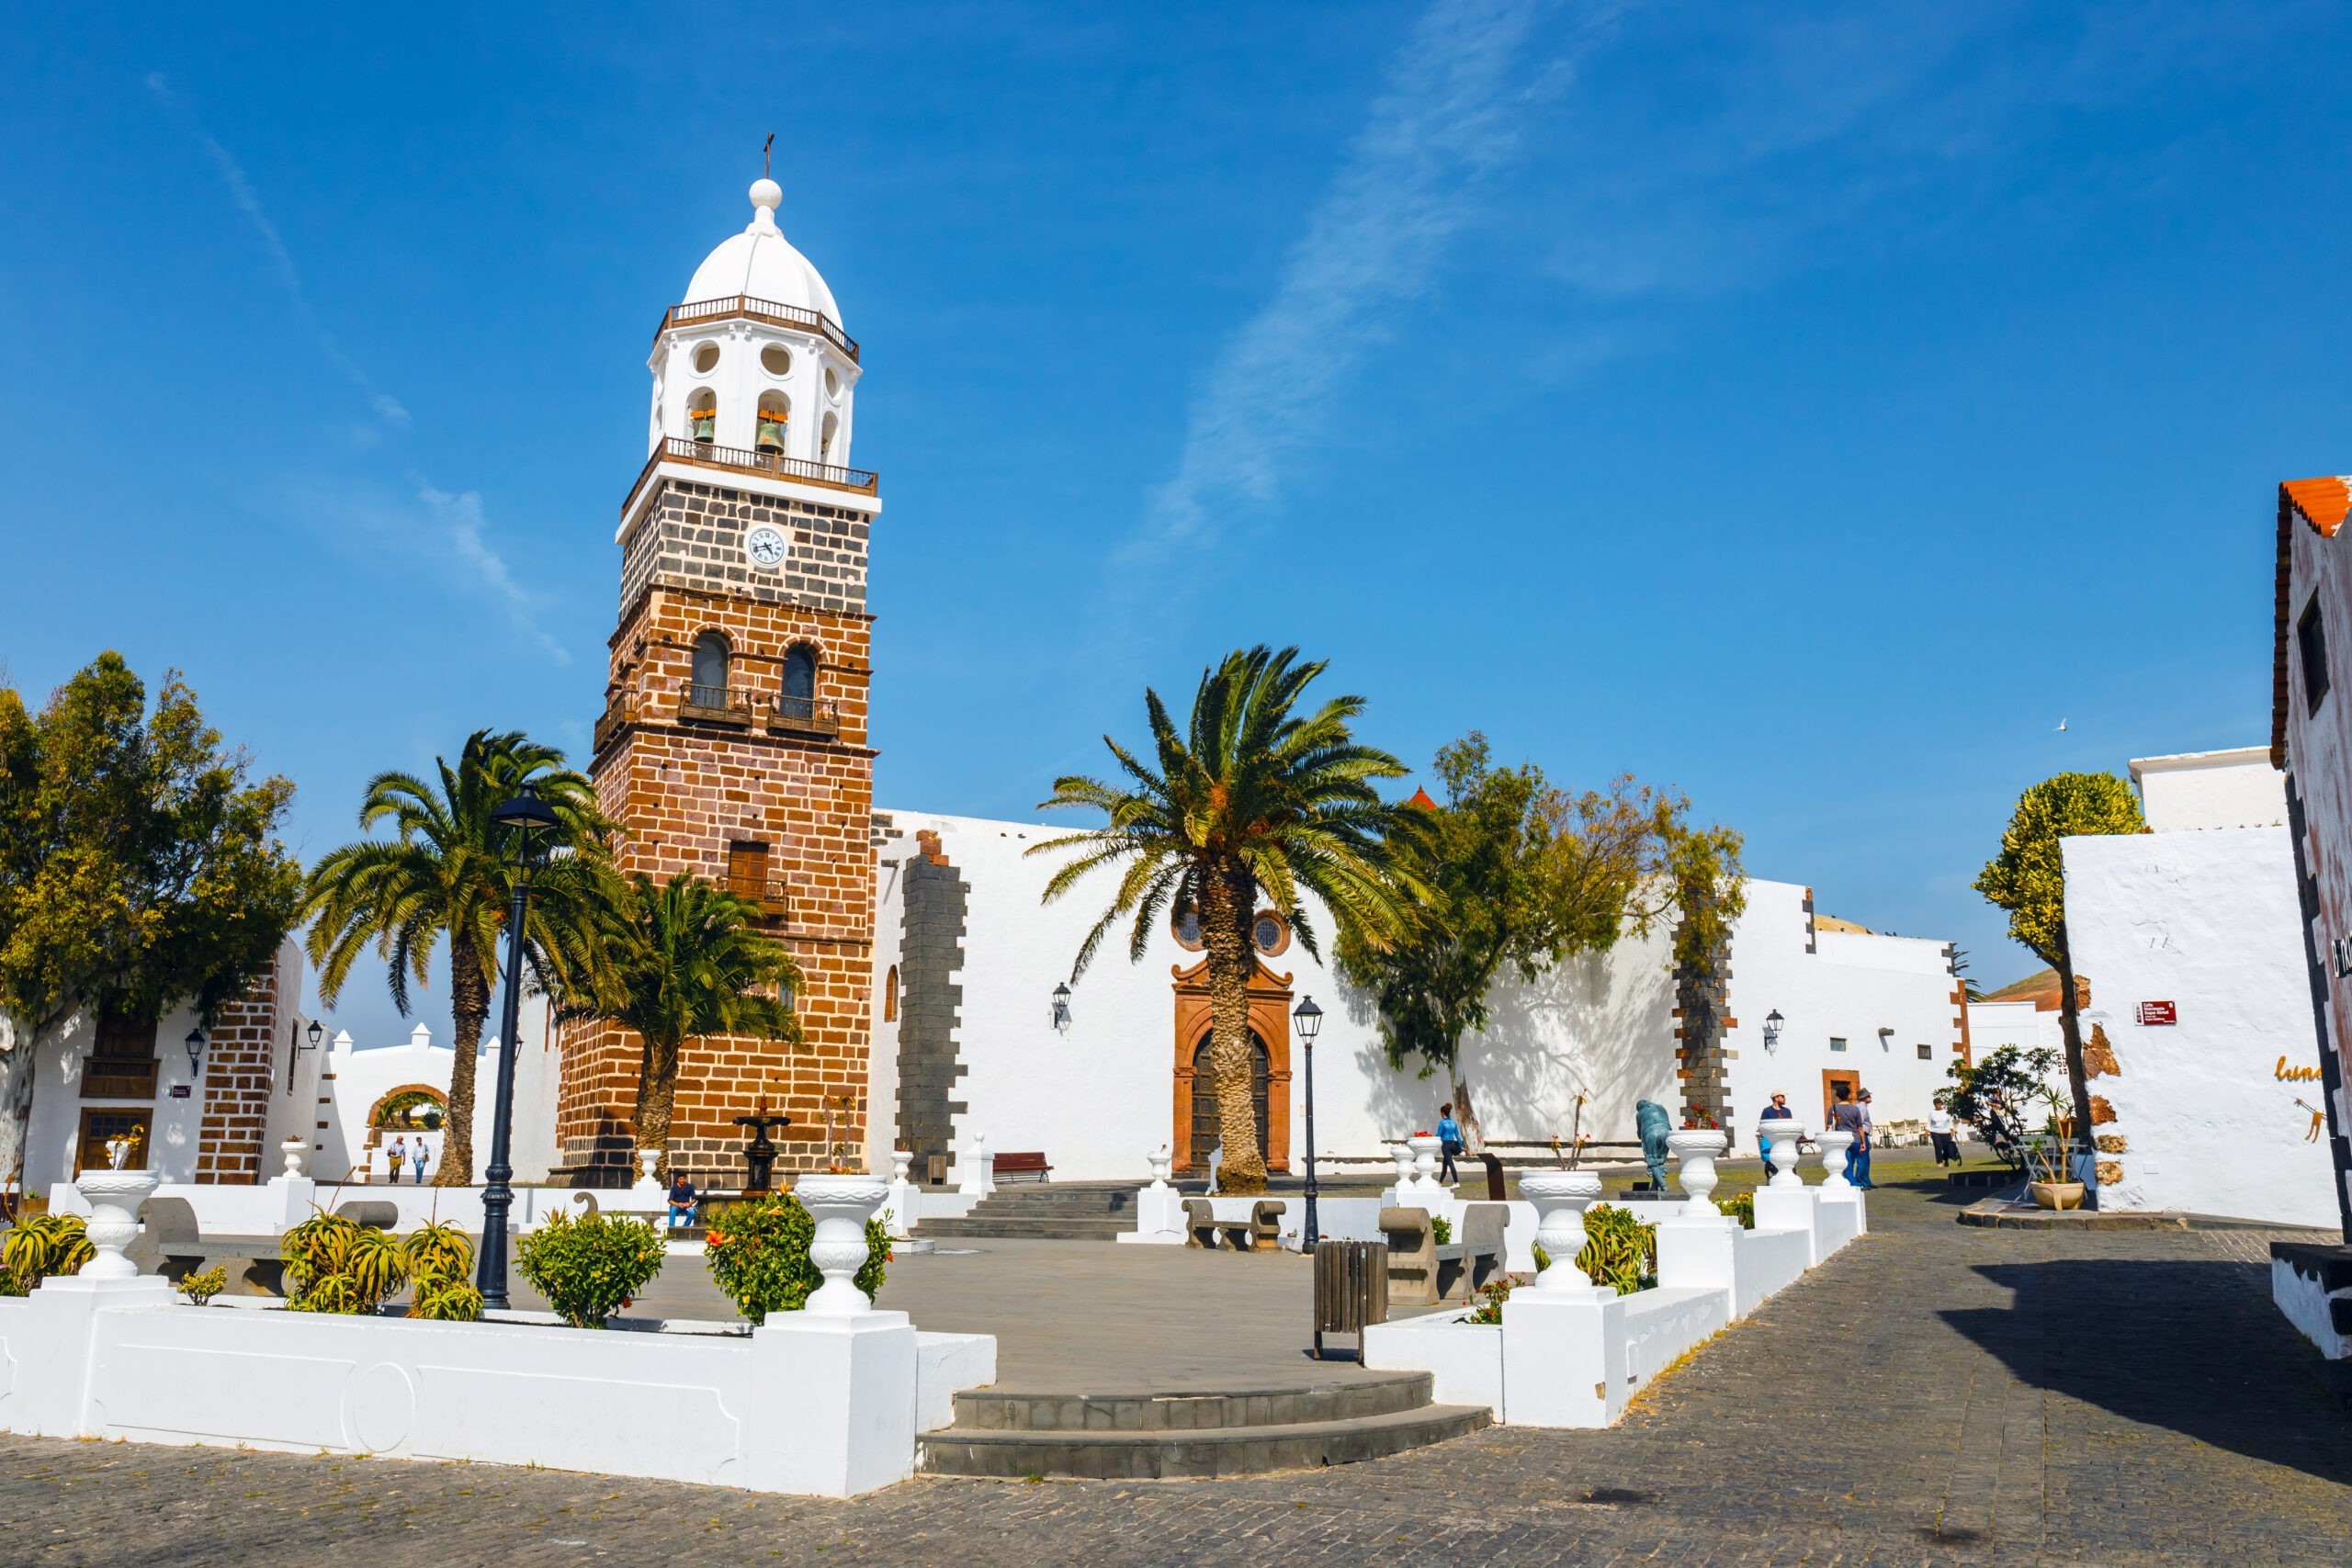 Tequise, wyspa Lanzarote, Hiszpania - Widok na centrum miasta Teguise, dawnej stolicy wyspy Lanzarote, licencja: shutterstock/By Dziewul